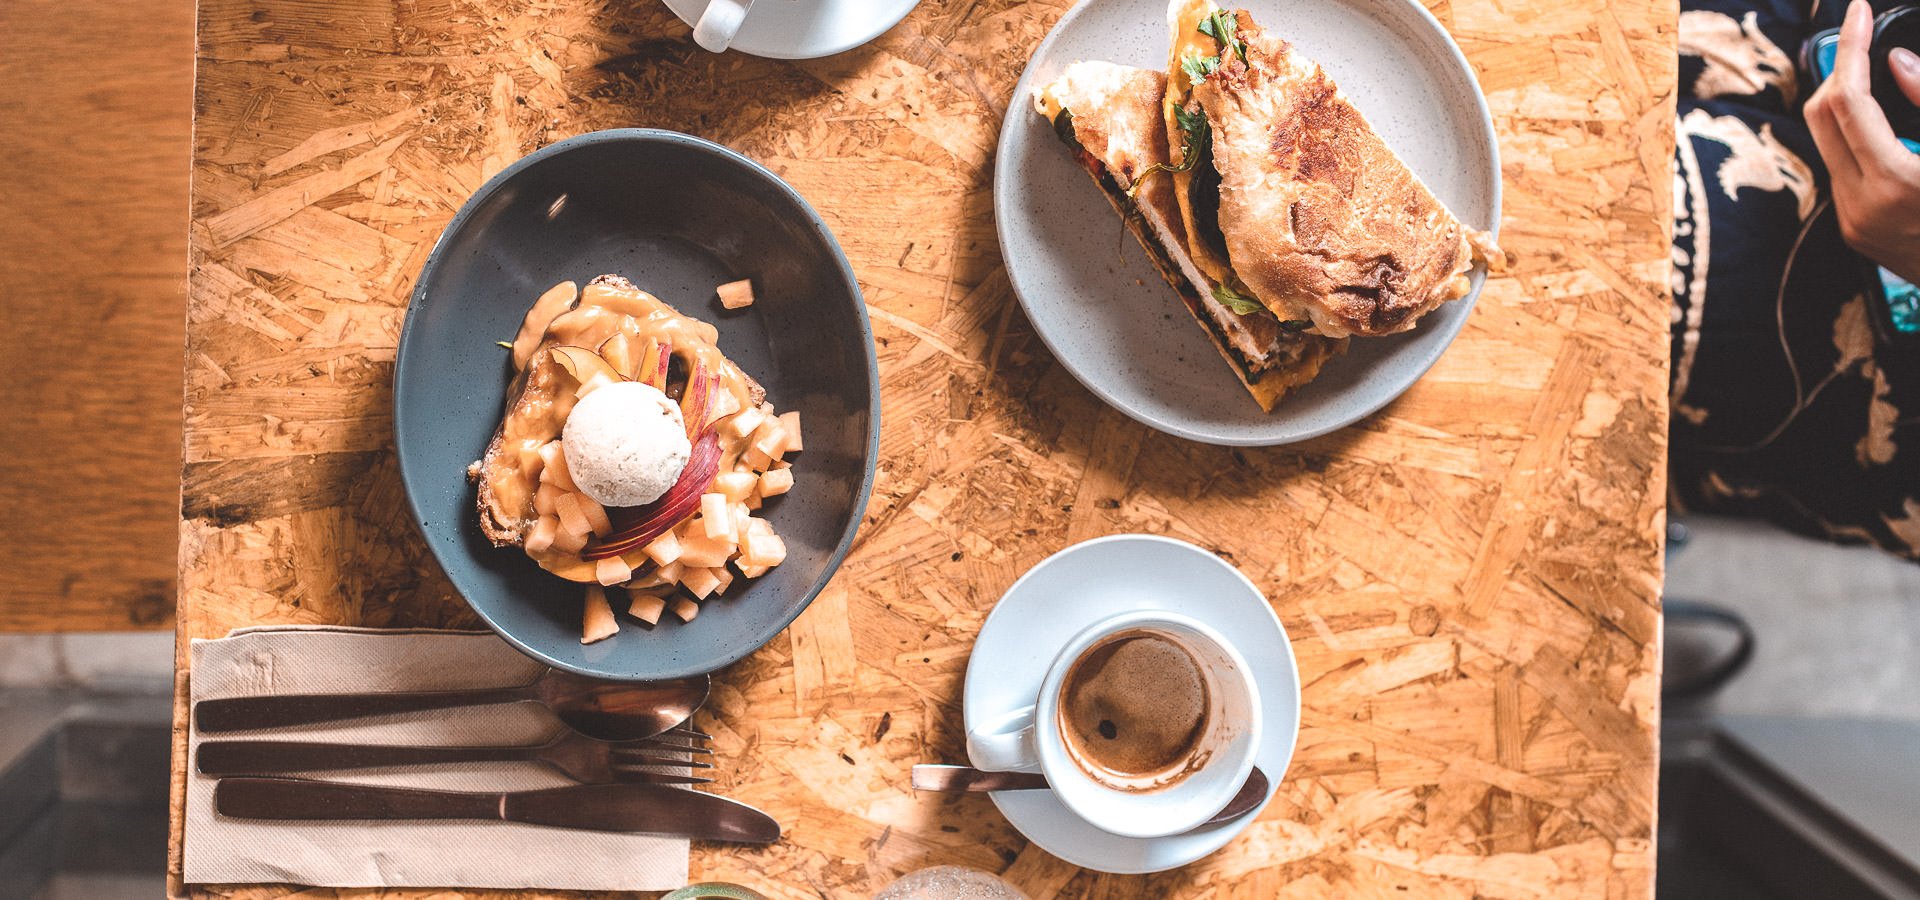 Best Brunch Brisbane: 13 Delicious Breakfast Spots You Must Try | byron bay travel guide 3